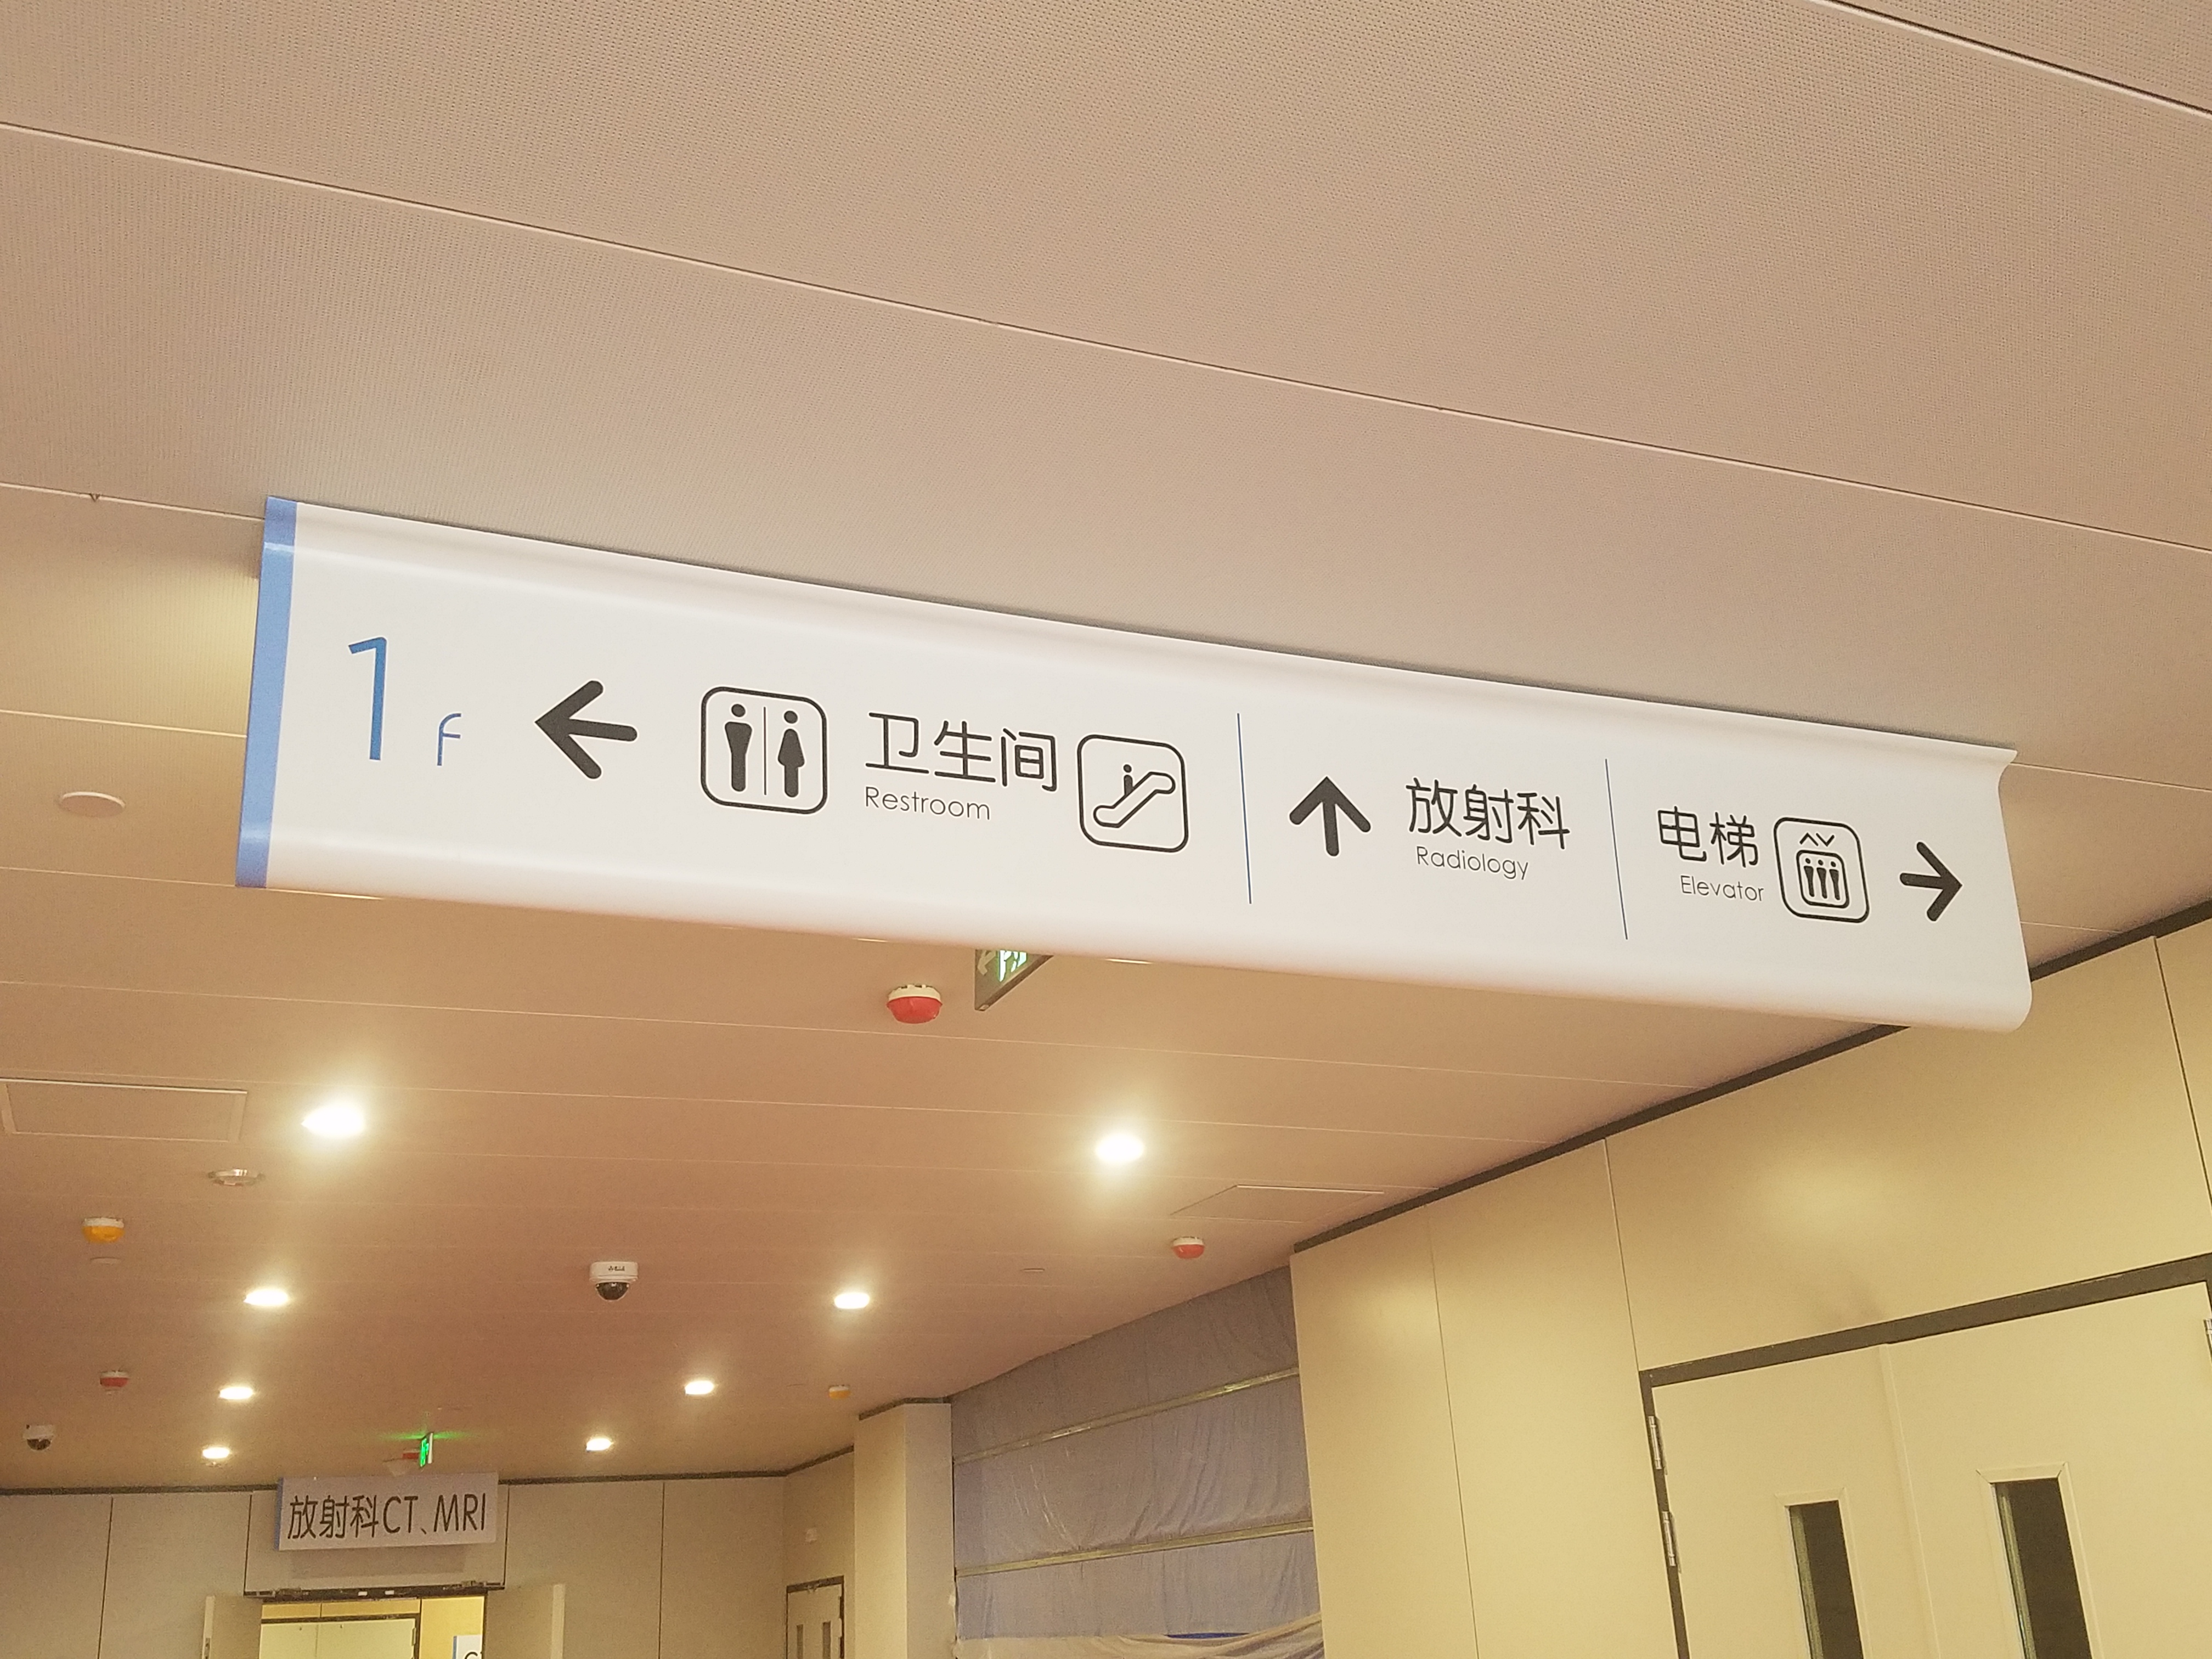 [医院标识设计]江苏省人民医院标识导视系统建设项目